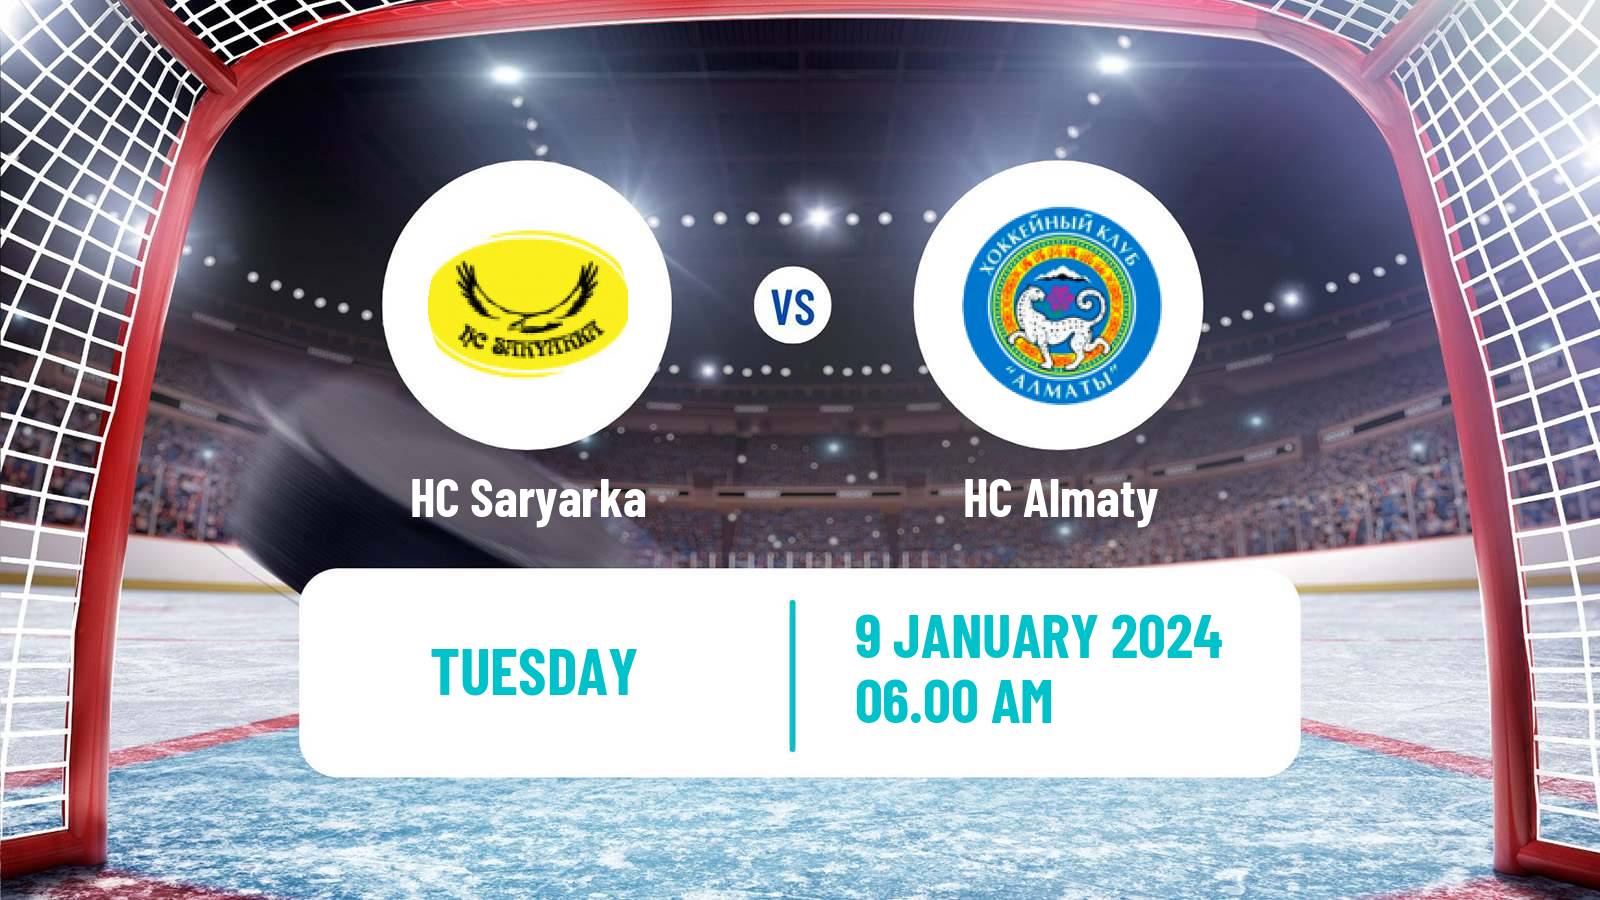 Hockey Kazakh Ice Hockey Championship Saryarka - Almaty